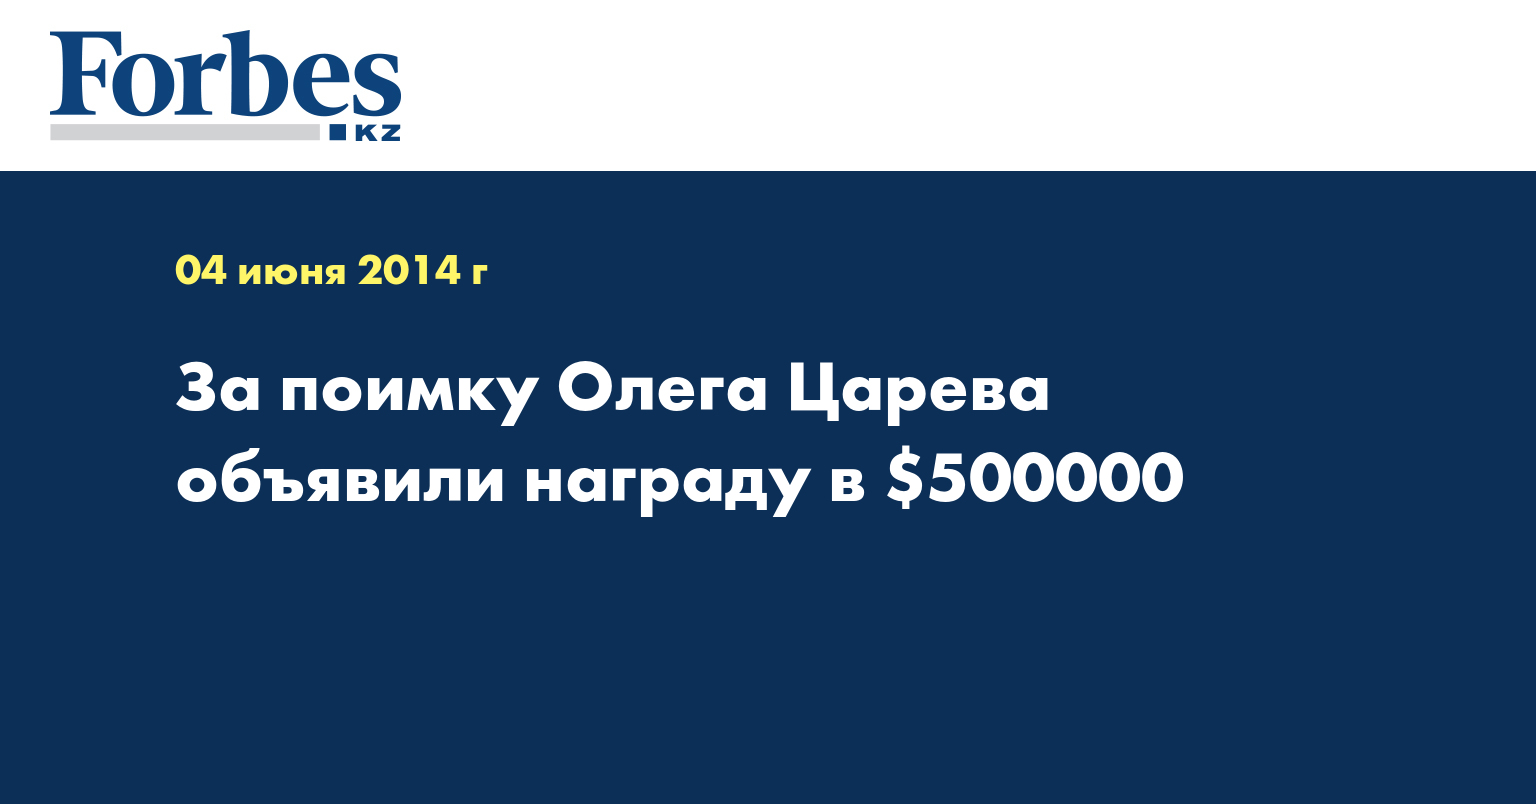 За поимку Олега Царева объявили награду в $500000